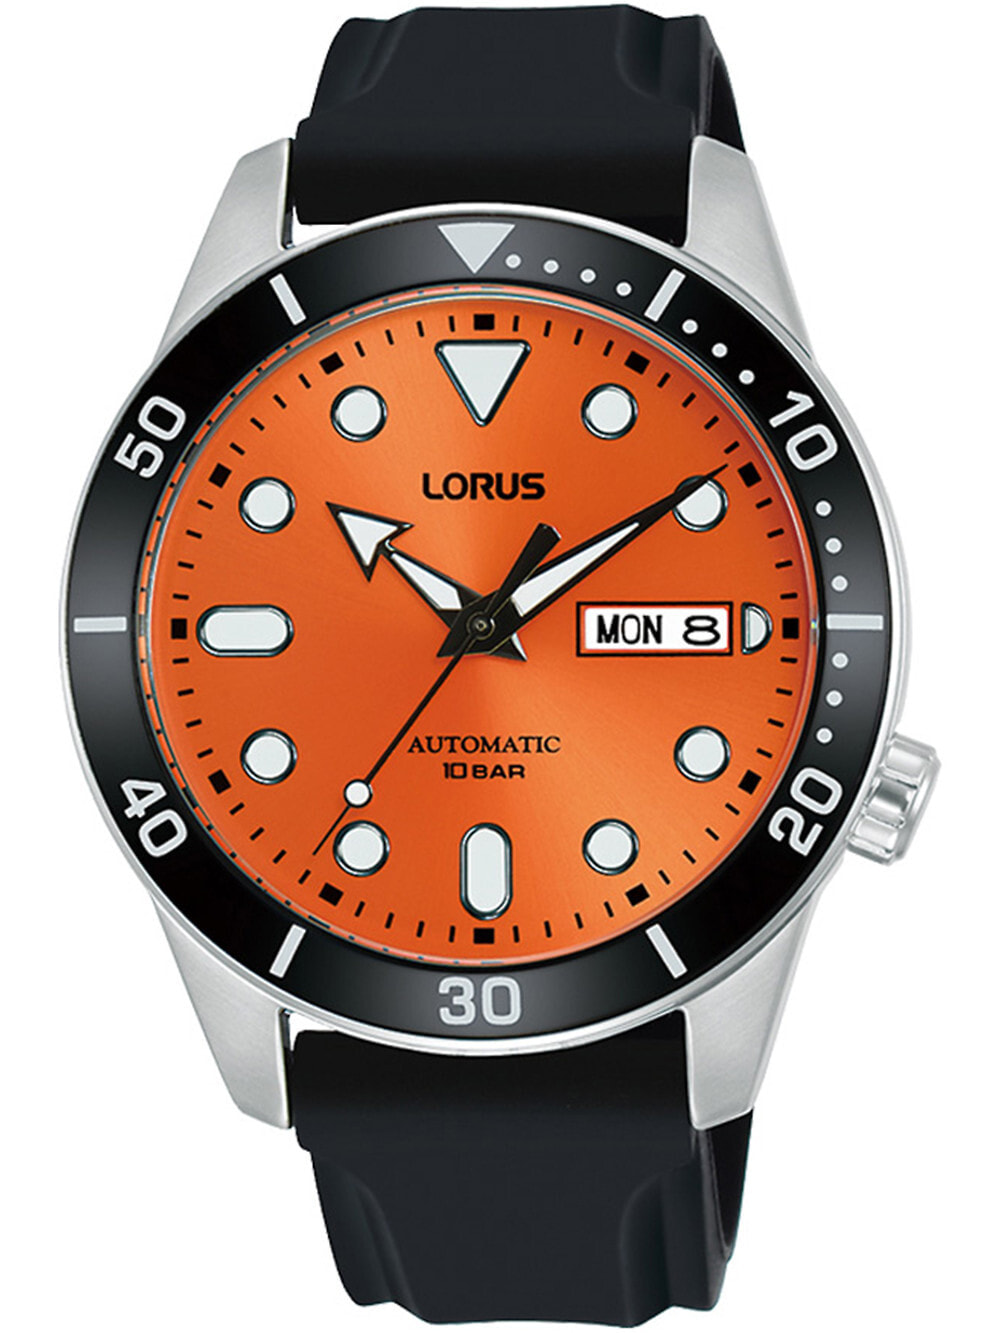 Мужские наручные часы с черным силиконовым ремешком  Lorus RL453AX9 automatic mens 42mm 10ATM